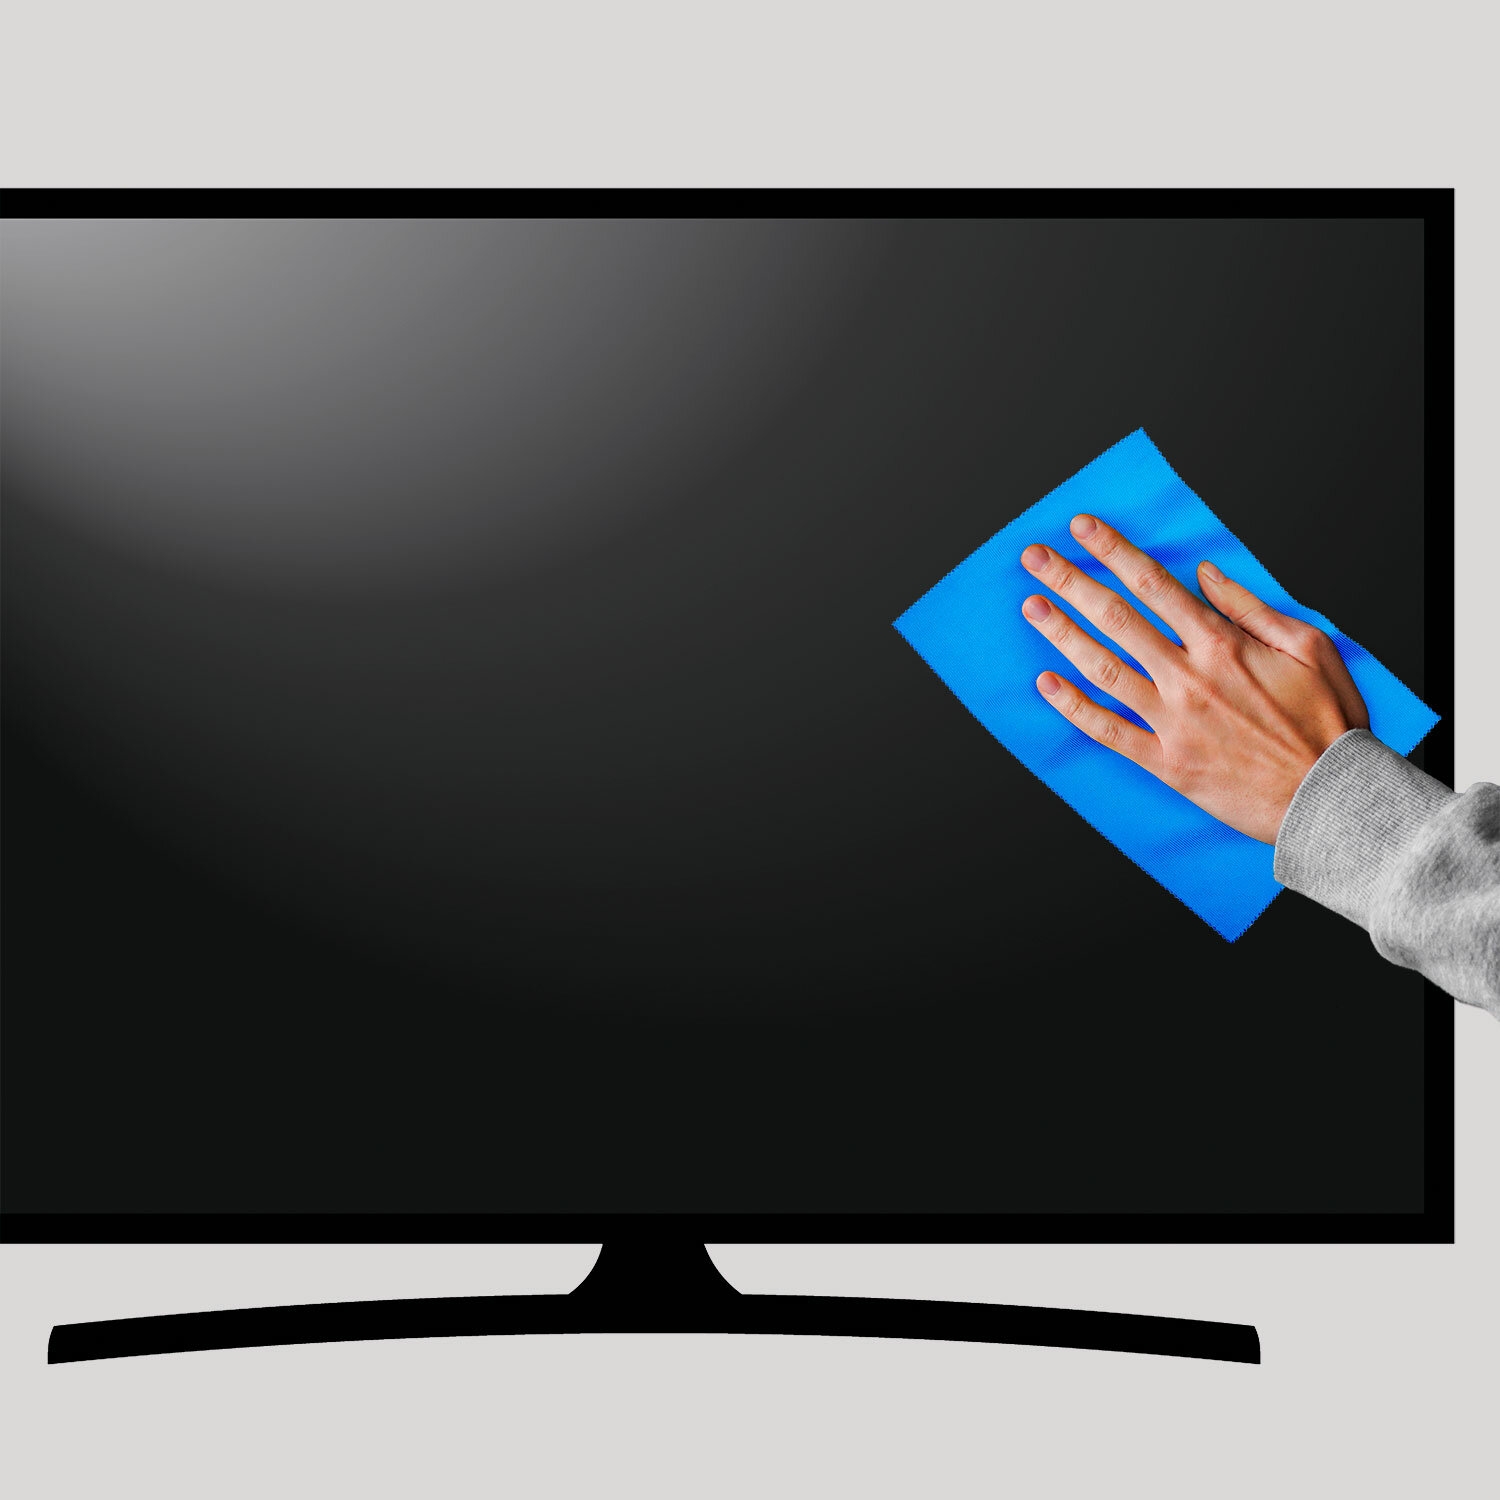 Японская салфетка Novelizer для очищения экранов монитора и телевизора зеркал и больших глянцевых поверхностей из микроволокна многоразовая